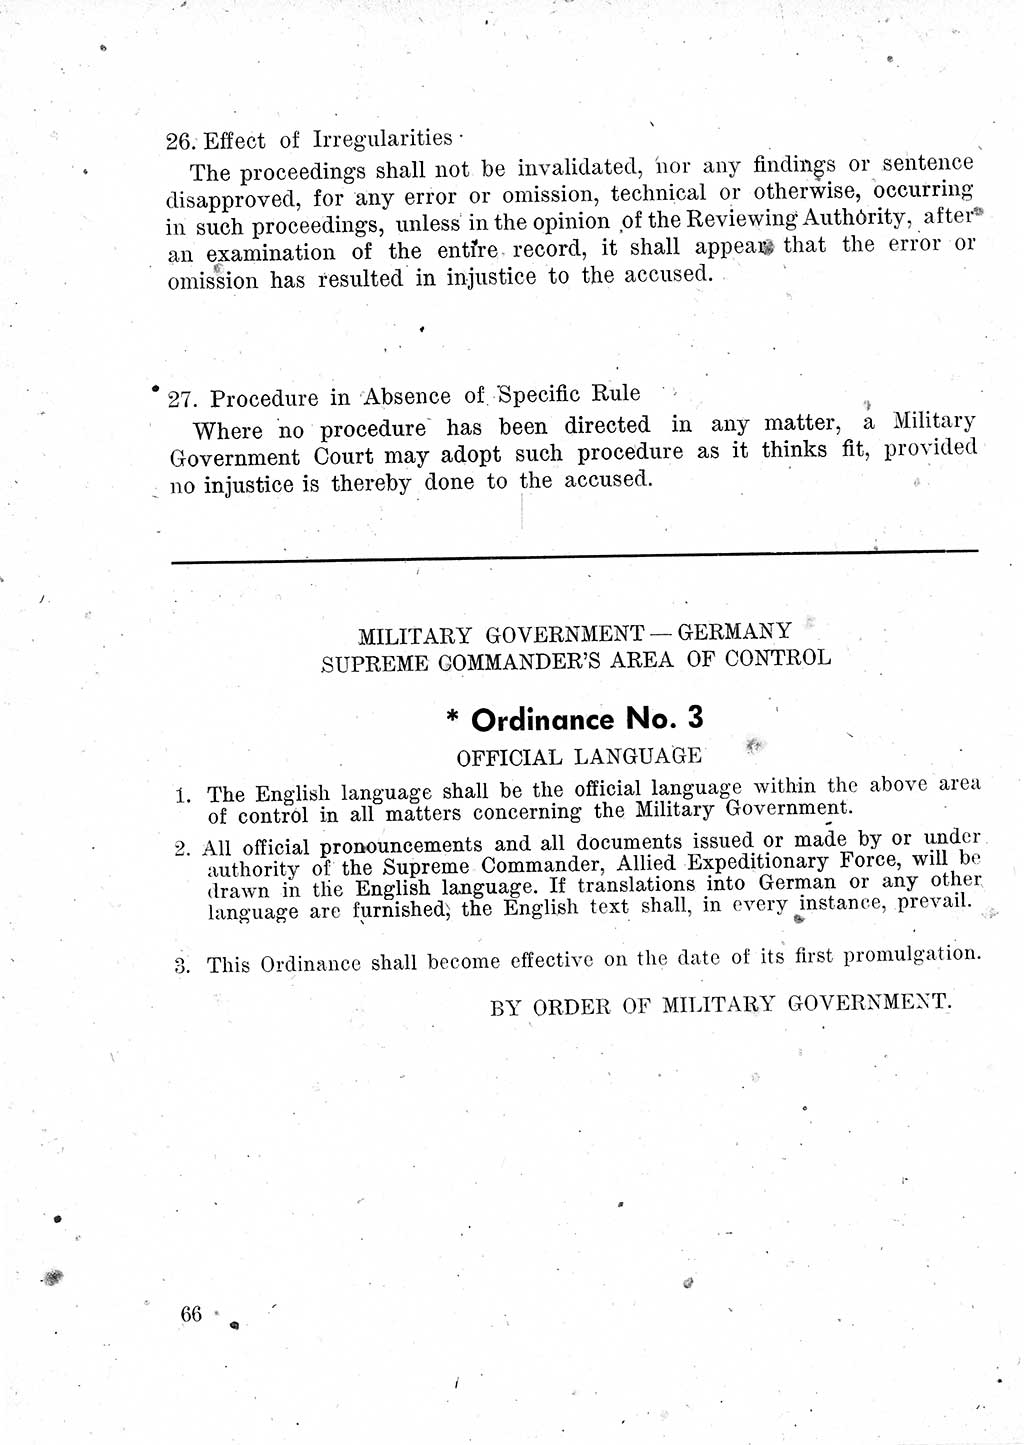 Das Recht der Besatzungsmacht (Deutschland), Proklamationen, Deklerationen, Verordnungen, Gesetze und Bekanntmachungen 1947, Seite 66 (R. Bes. Dtl. 1947, S. 66)